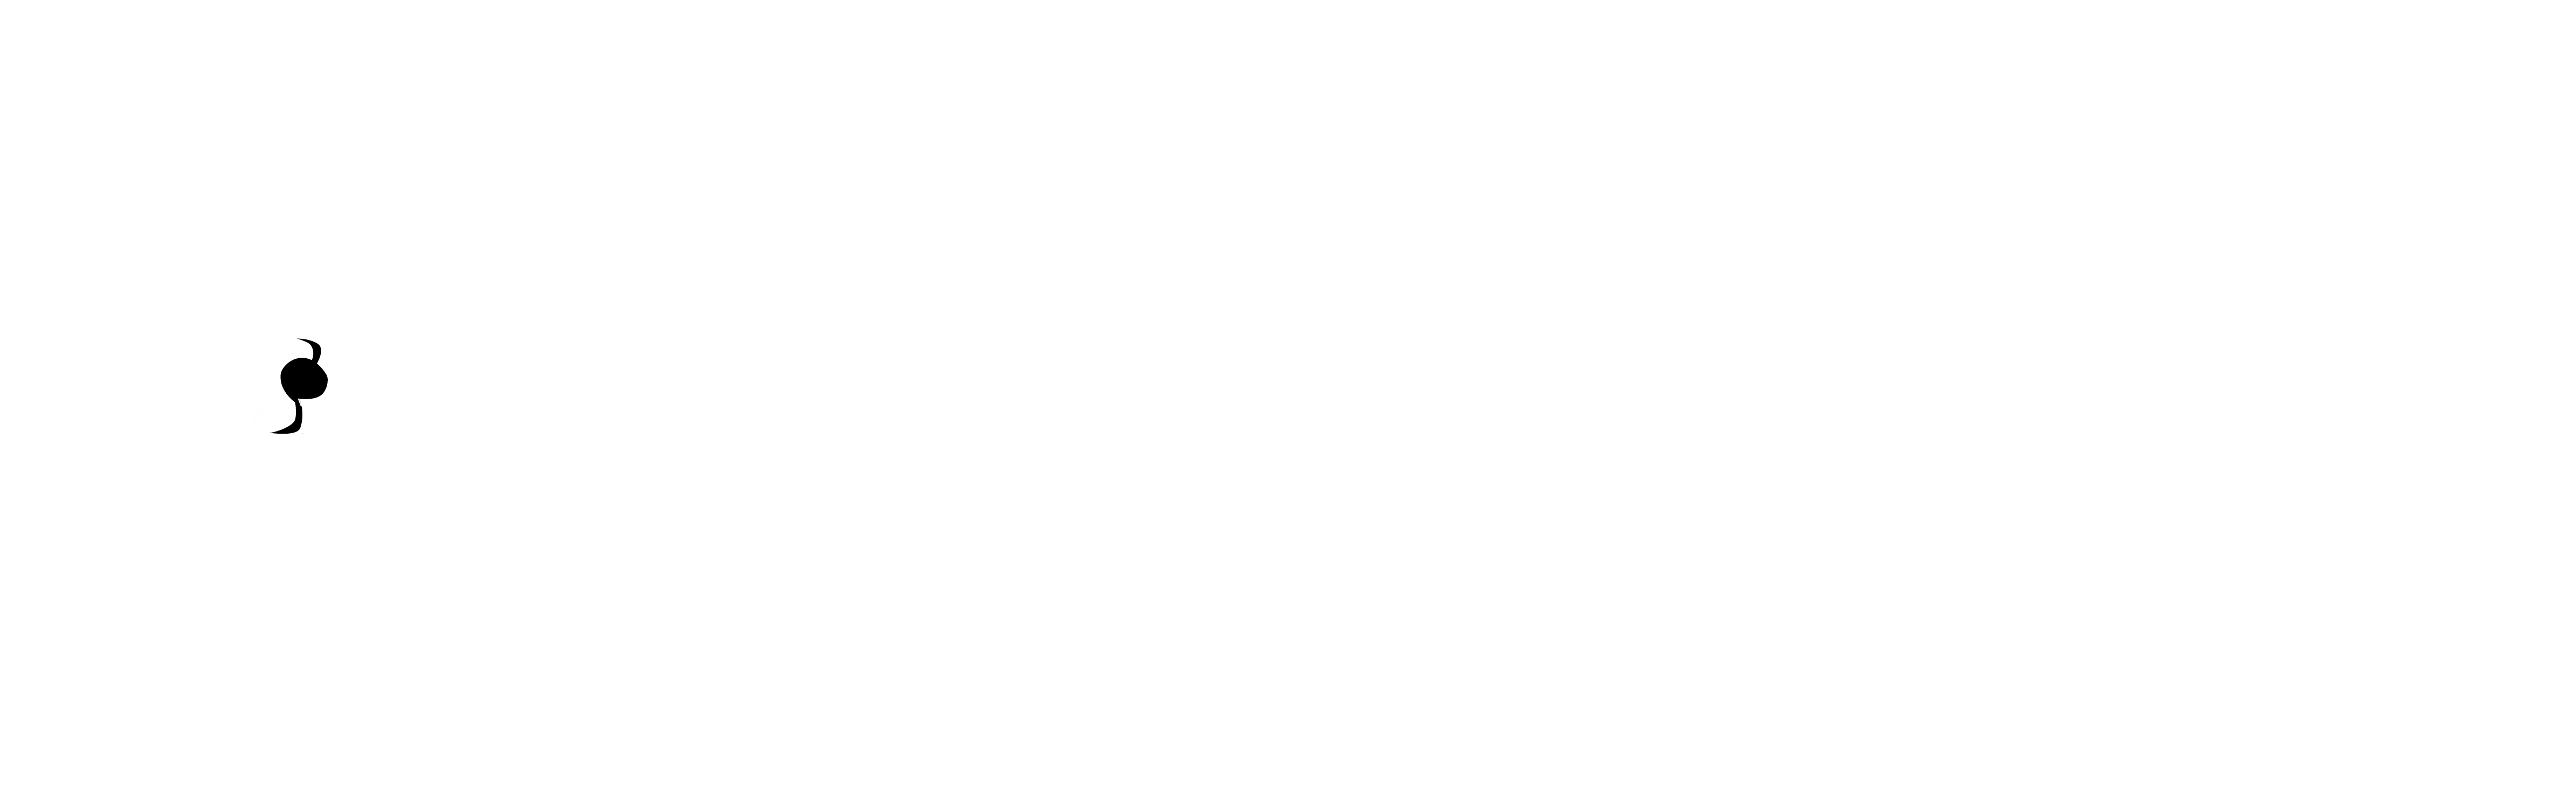 Snipers Skeleton Club